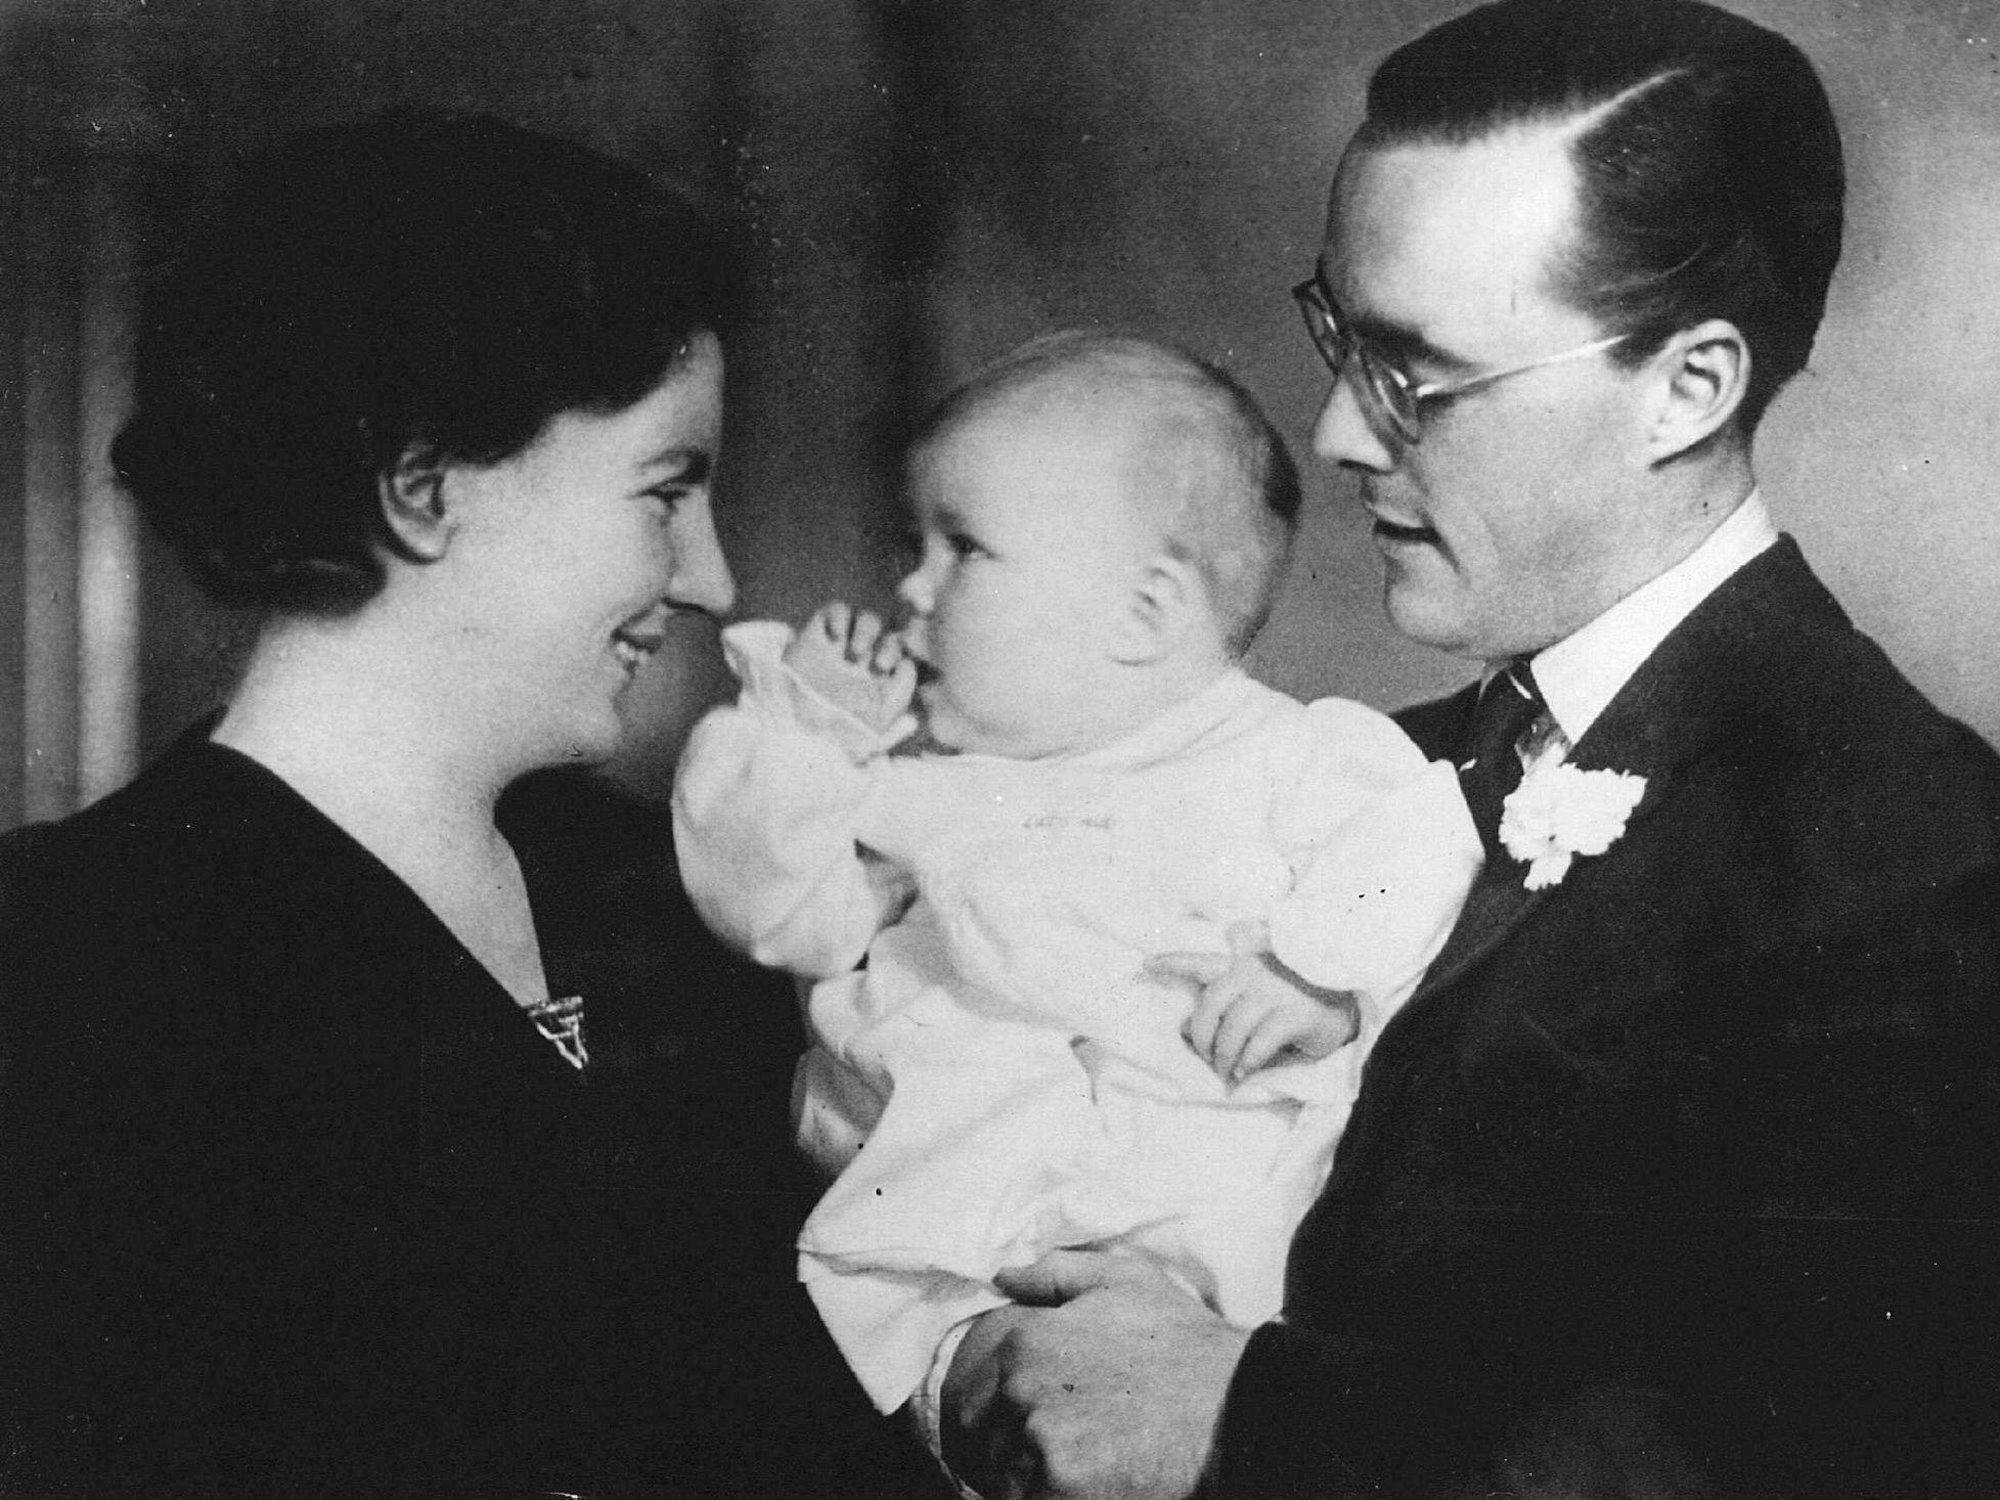 Ein Foto aus dem Jahr 1938 zeigt Prinz Bernhard, Ehefrau Prinzessin Juliana und Töchterchen Prinzessin Beatrix der Niederlande.